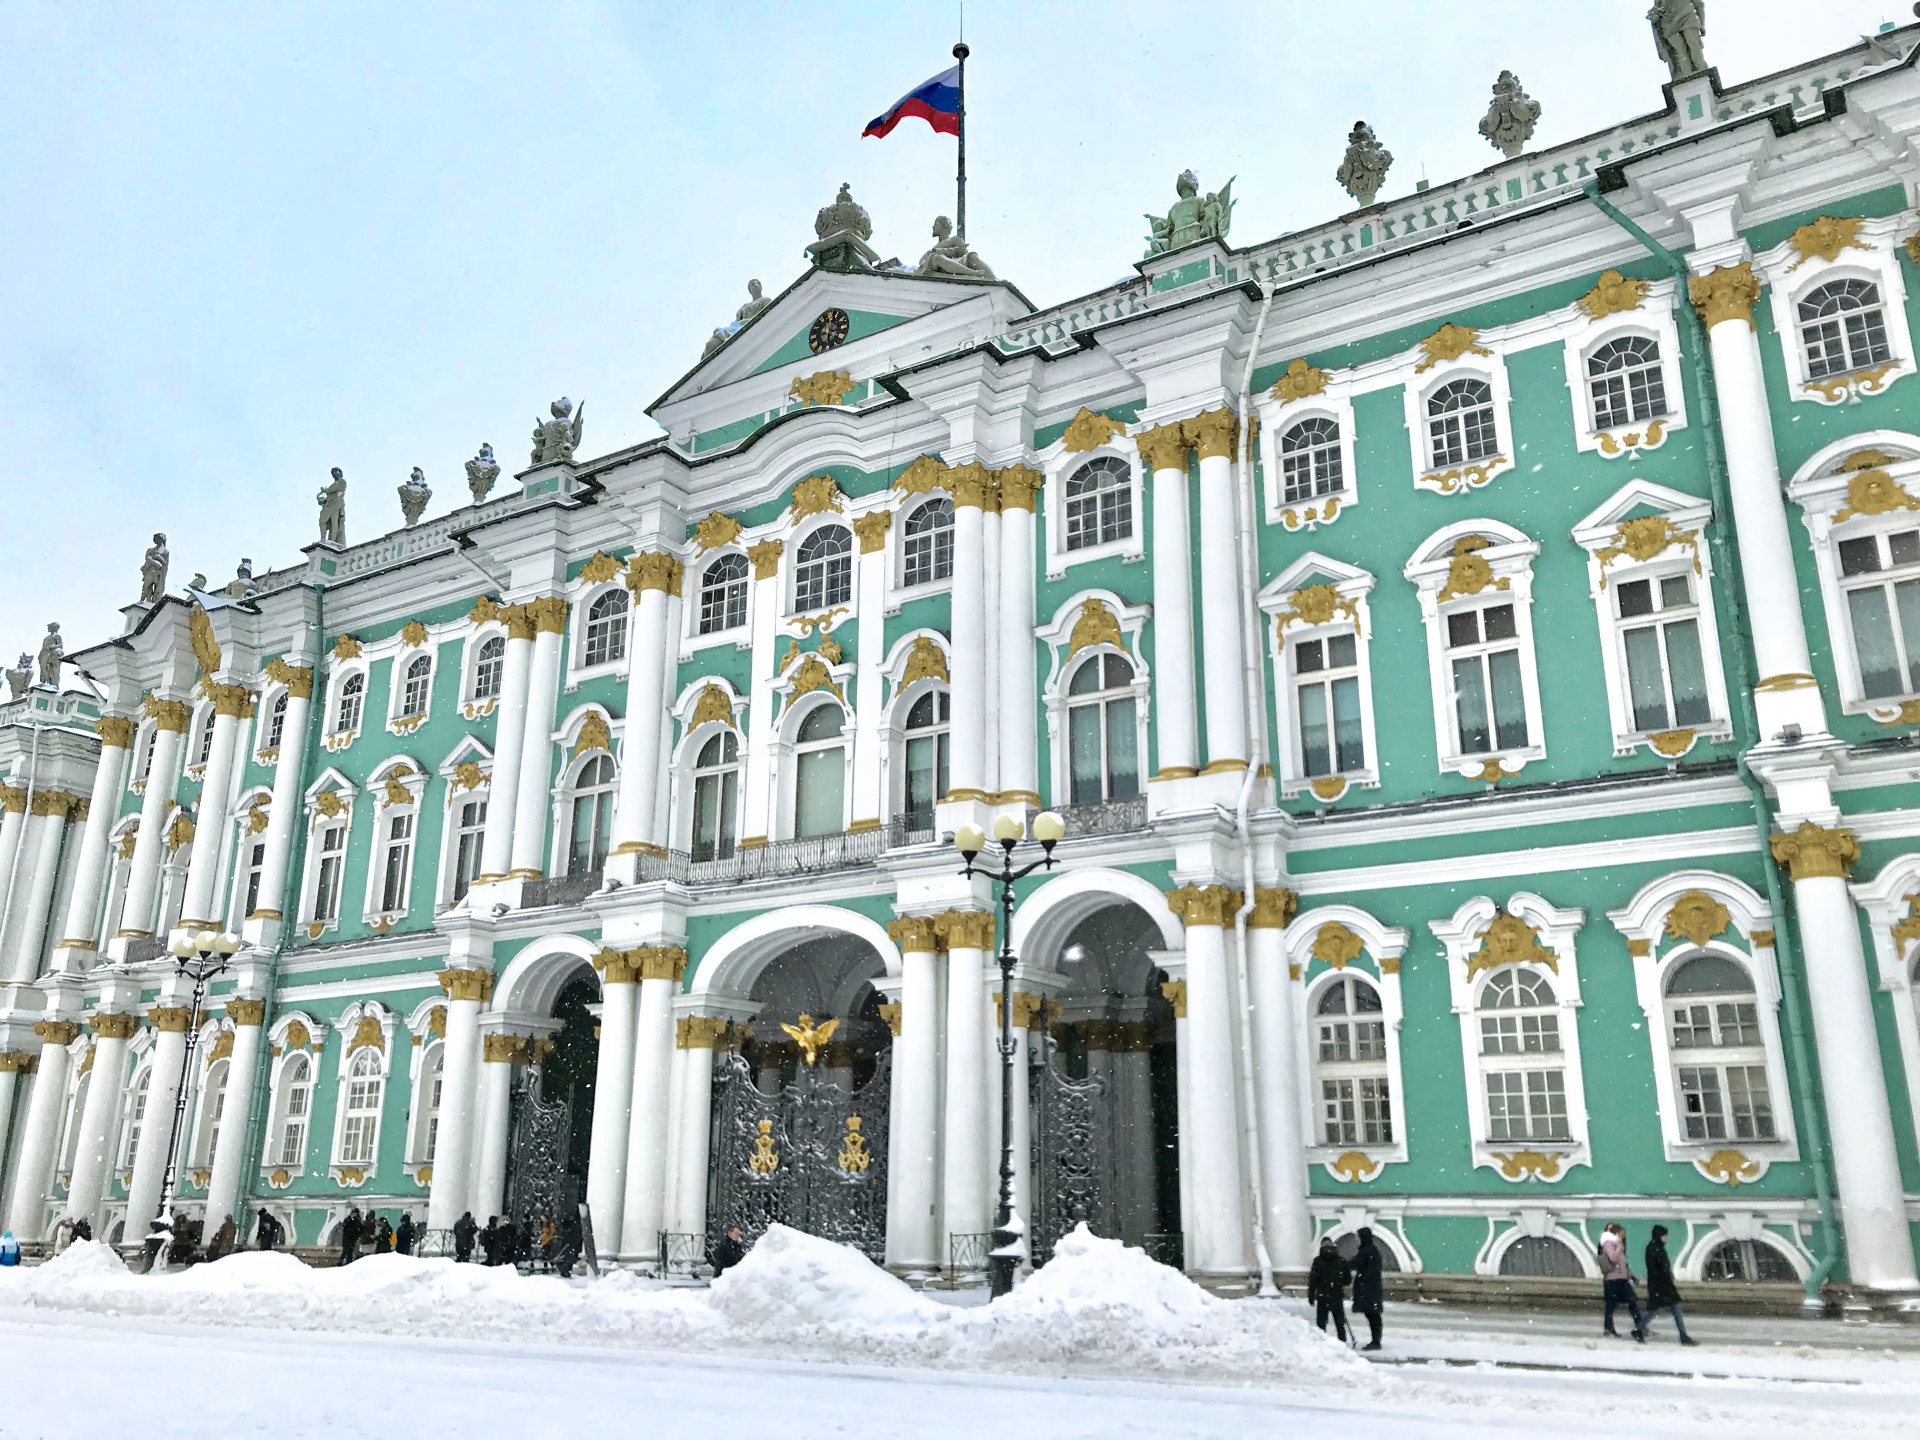 サンクトペテルブルク歴史地区と関連建造物群